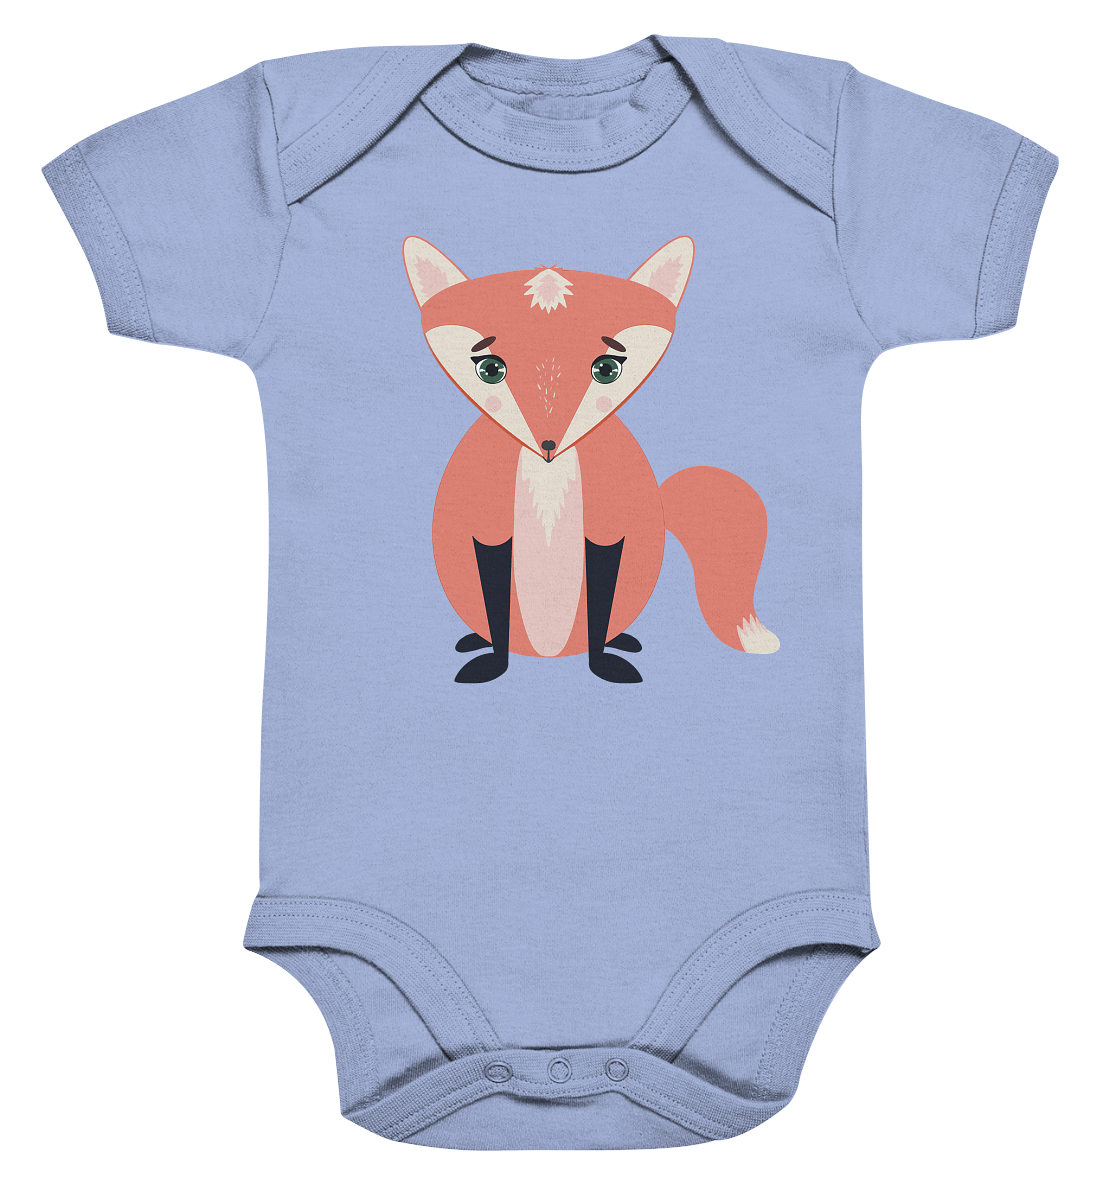 Baby Strampler in blau mit einem süßen Fuchs Design. Mit viel Liebe handgezeichnet. 